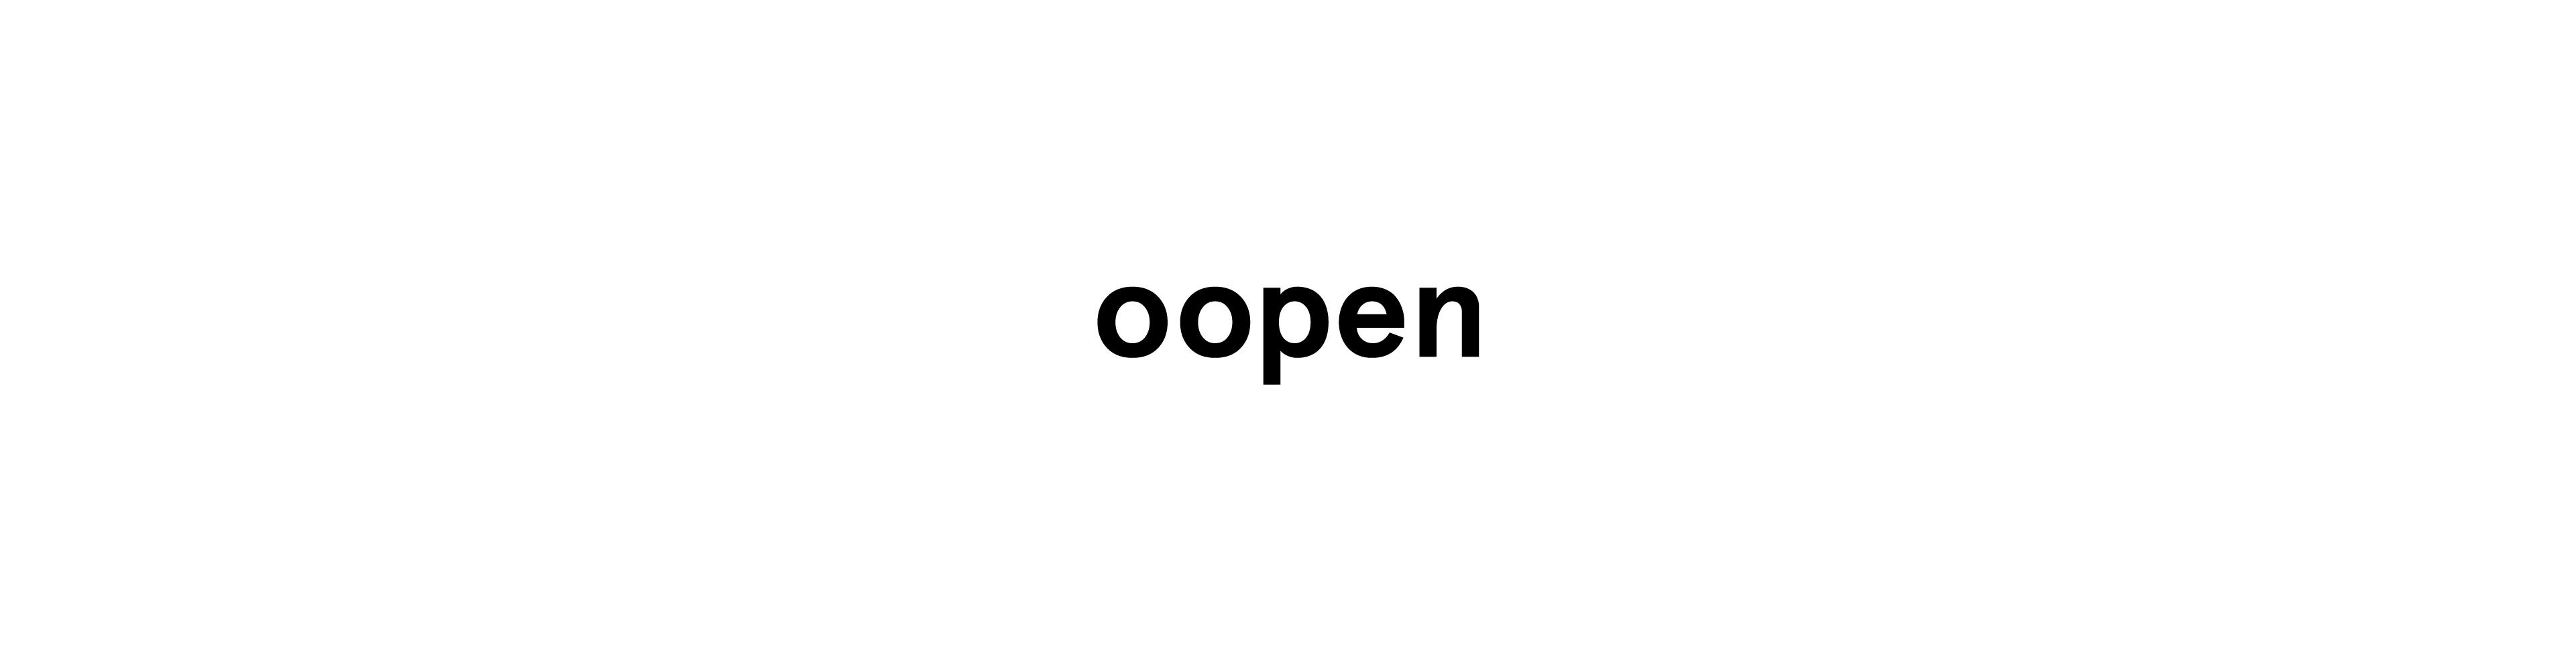 oopen-blog